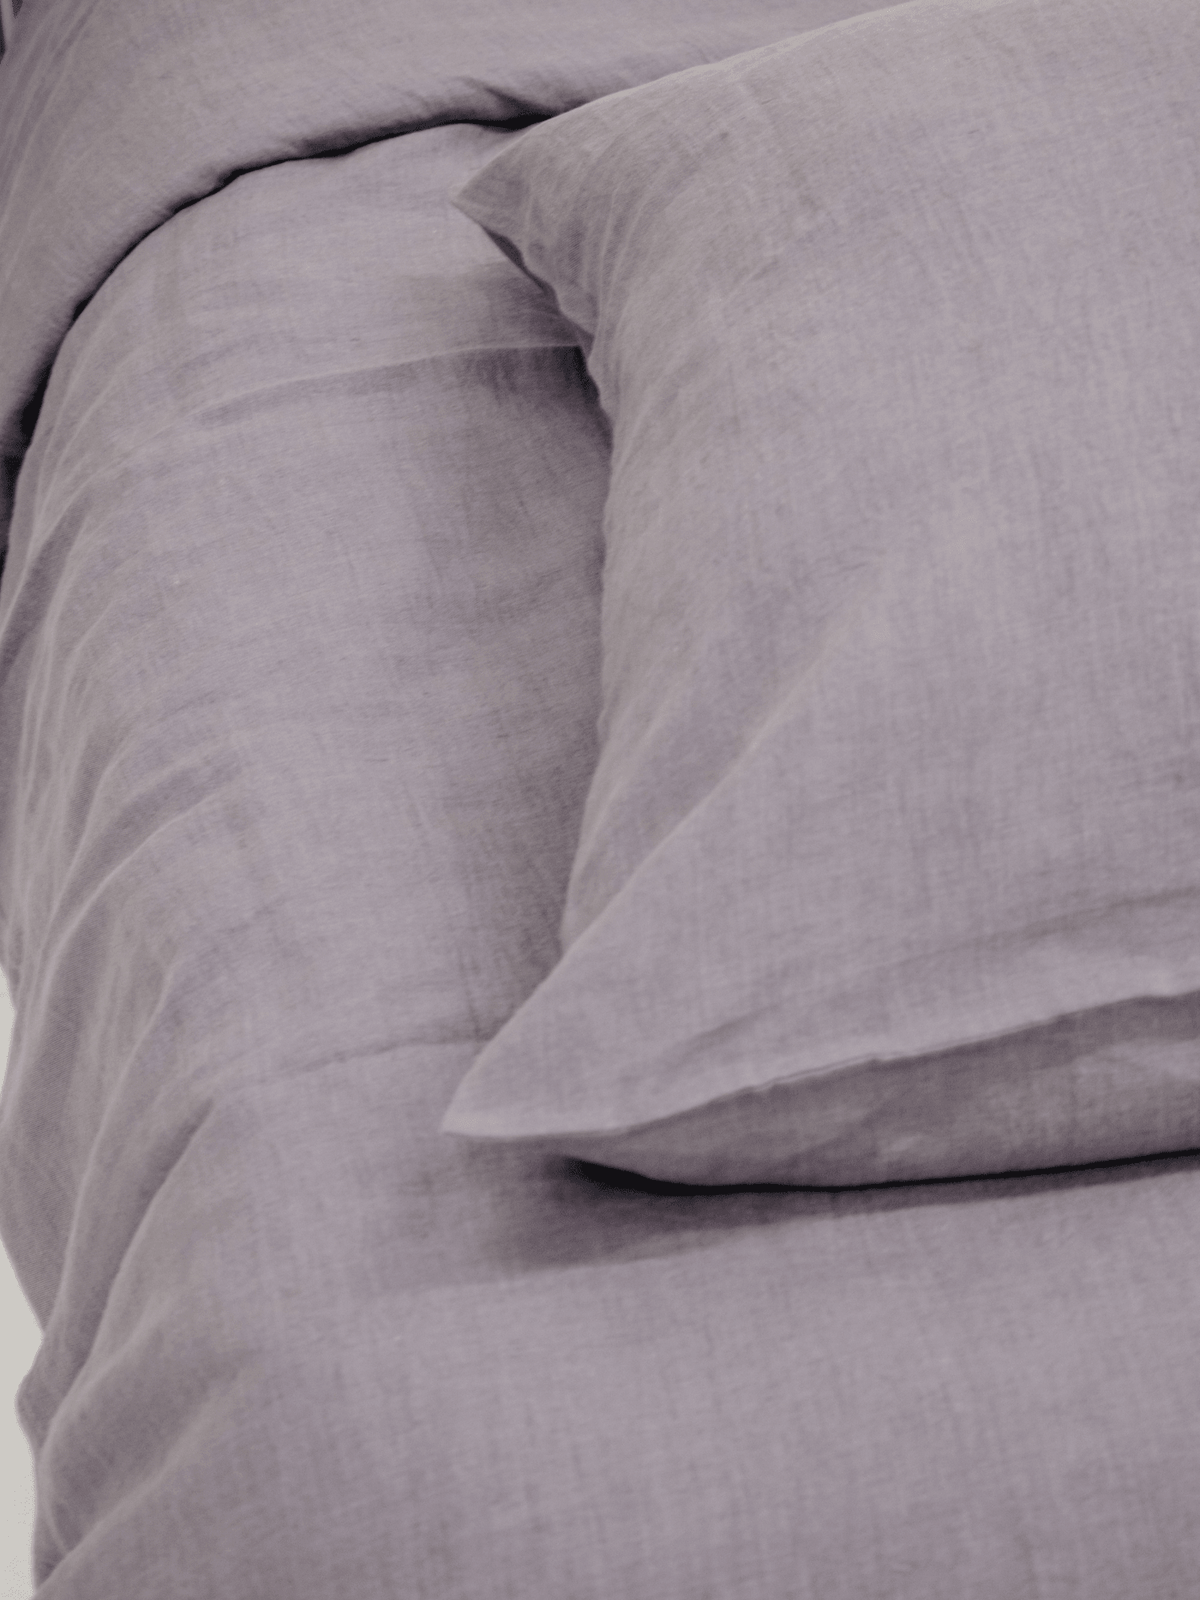 Perfect Gray Soft Linen Pillowcase - Bedroom, Linen pillowcase - FlaxLin Eco Textiles